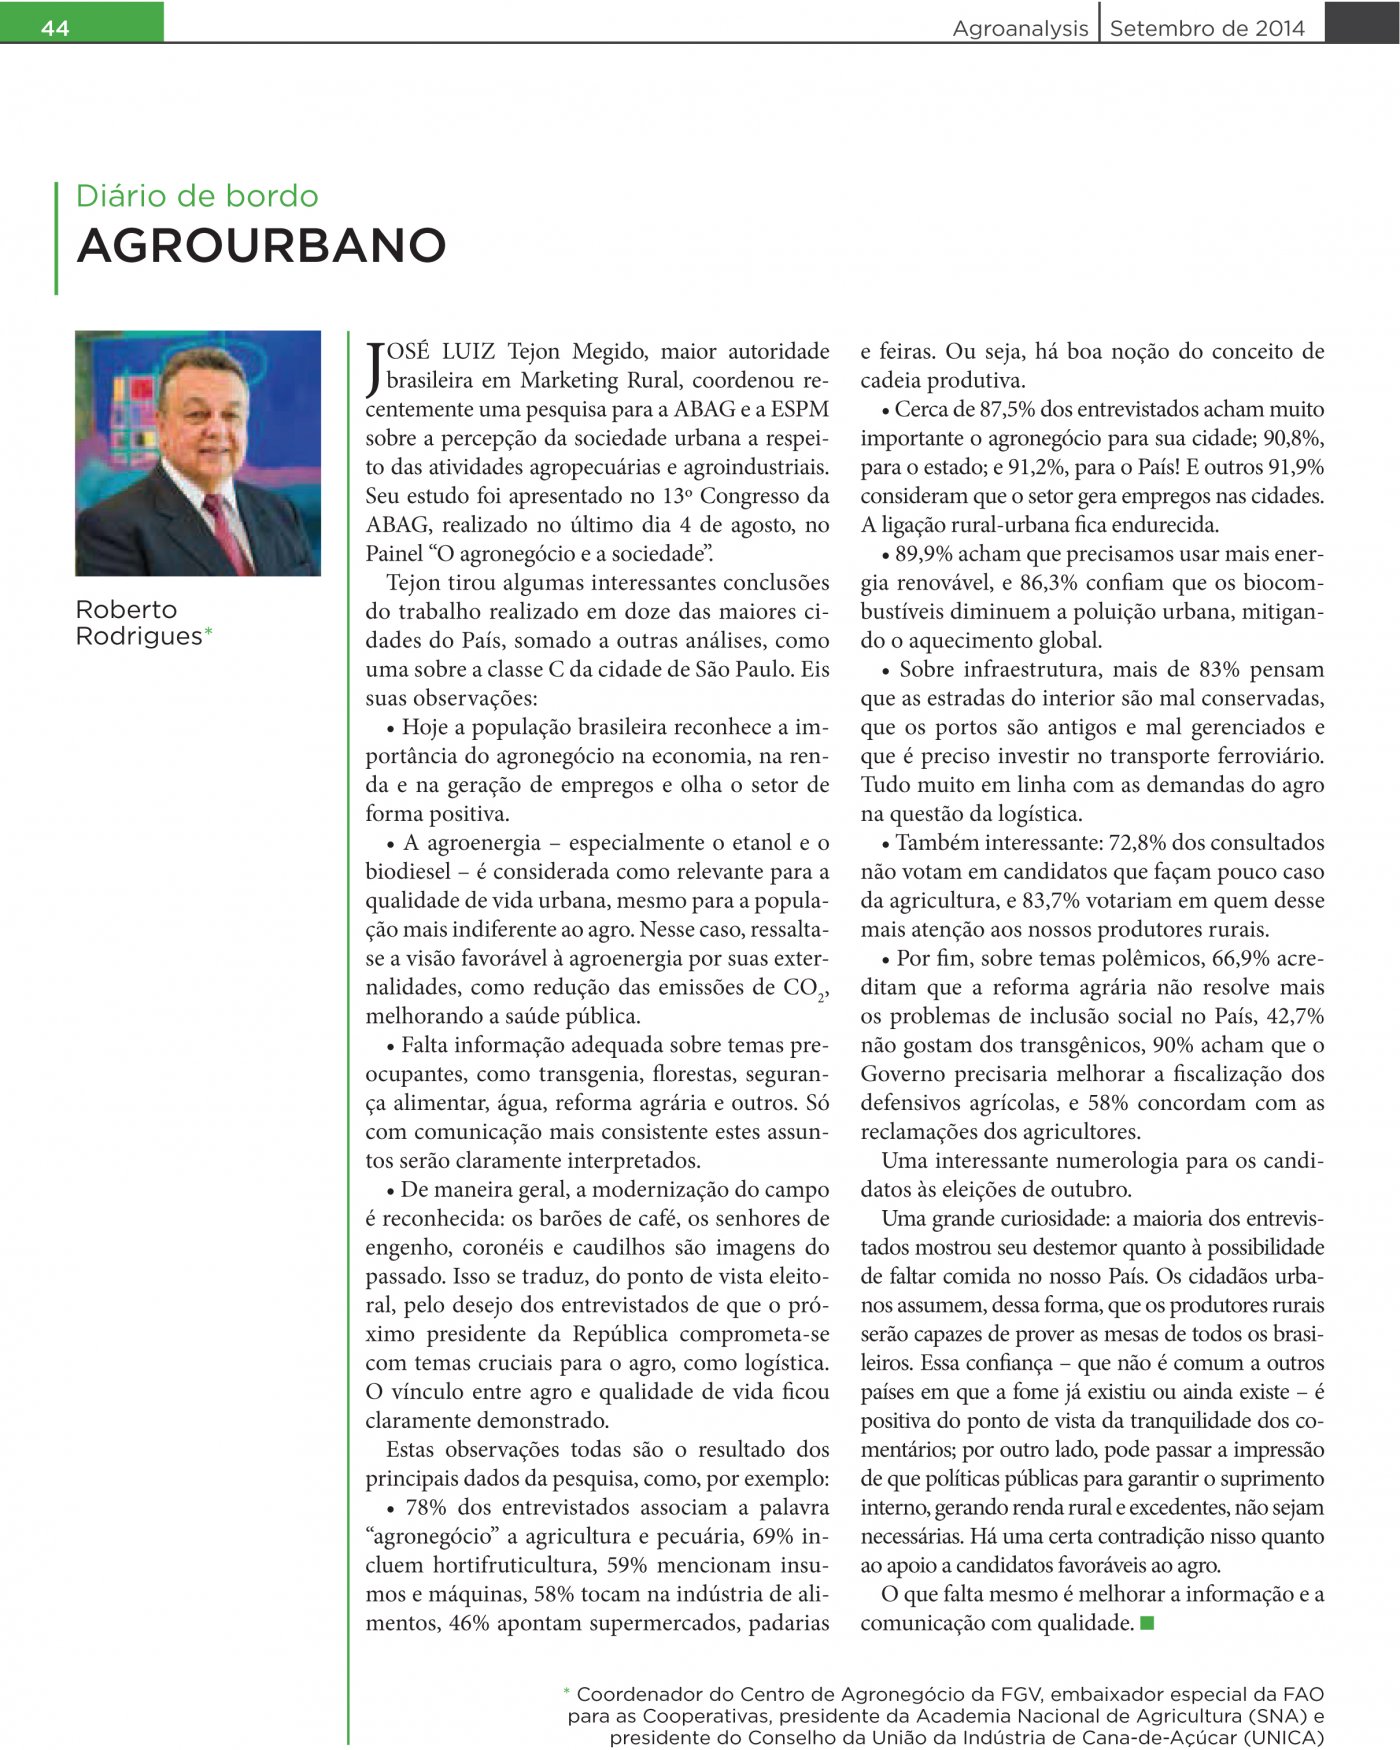 Ex-ministro da Agricultura assina artigo sobre a pesquisa coordenada por José Luiz Tejón